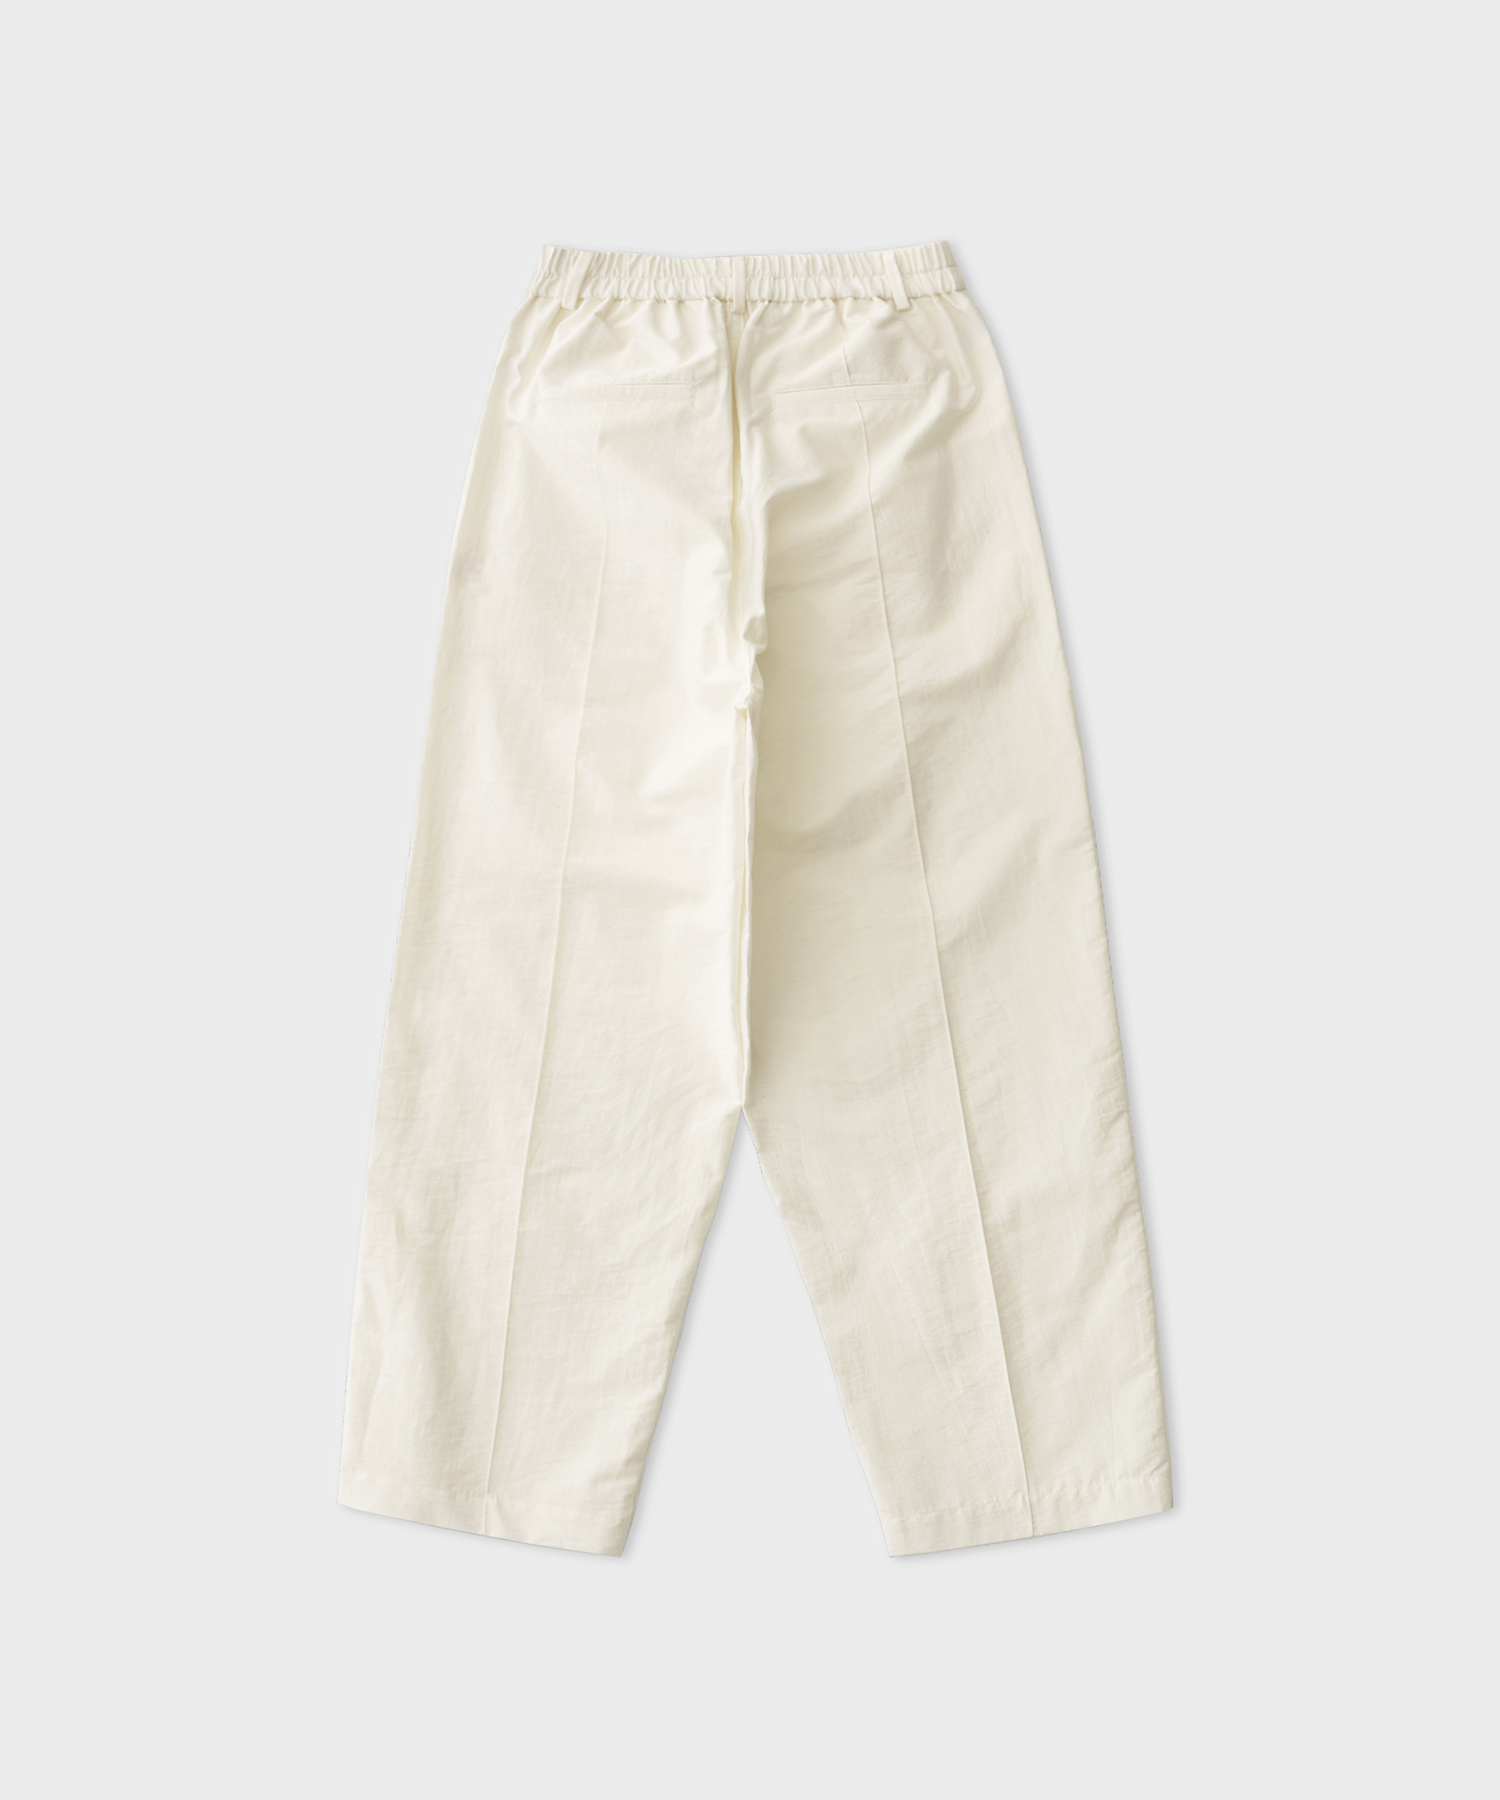 Draped Tailoring Pants (White)